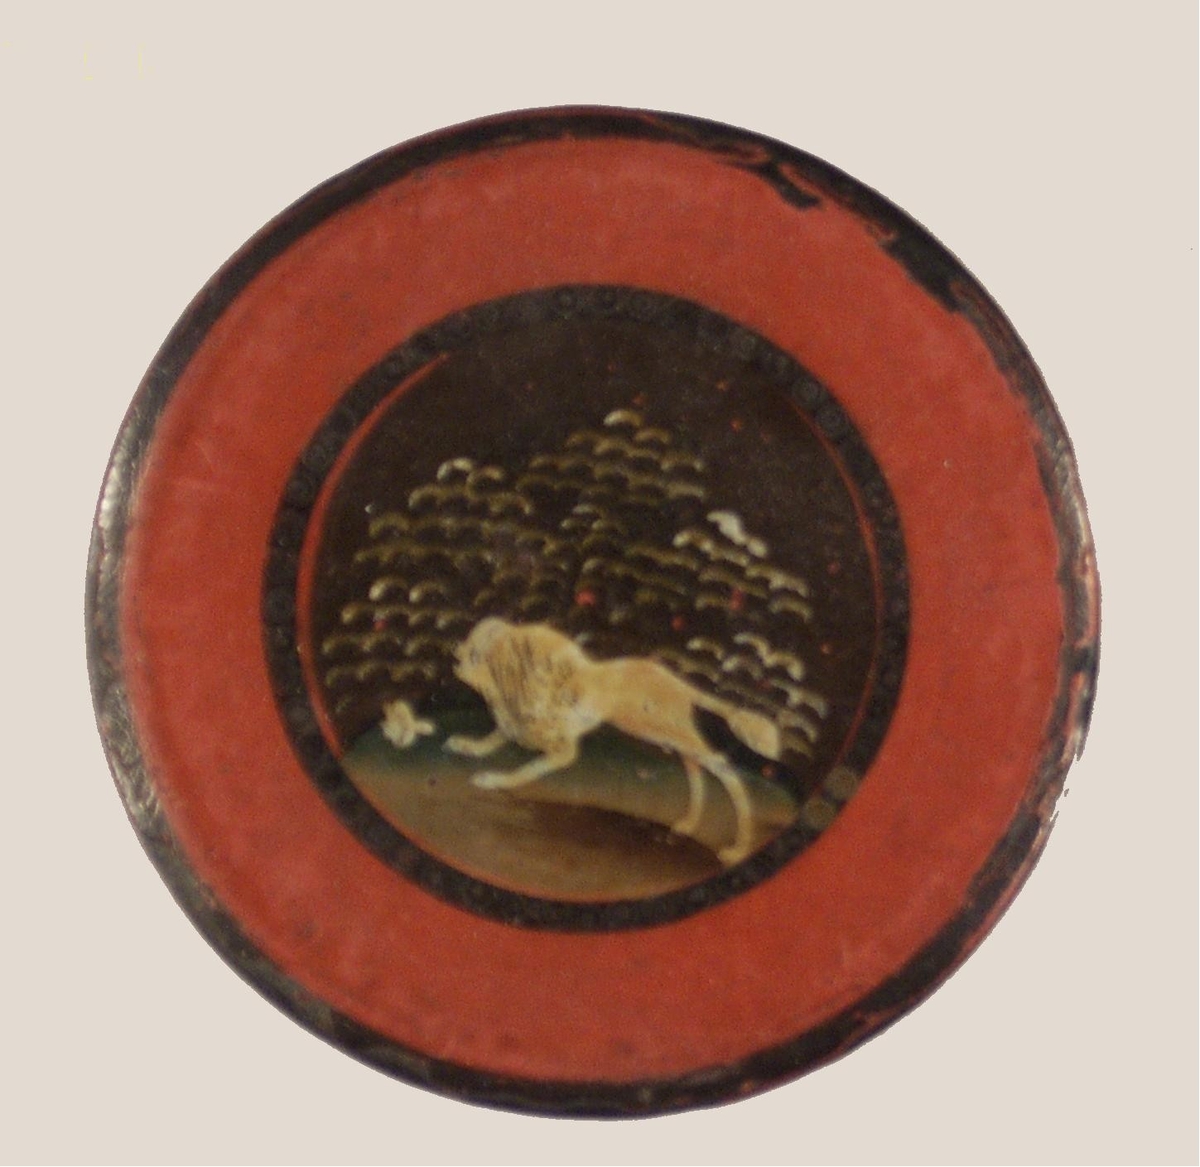 Nipperask lackerad i rött och svart, på locket lejonfigur (pudel?). På undersidan med vit färg 3.